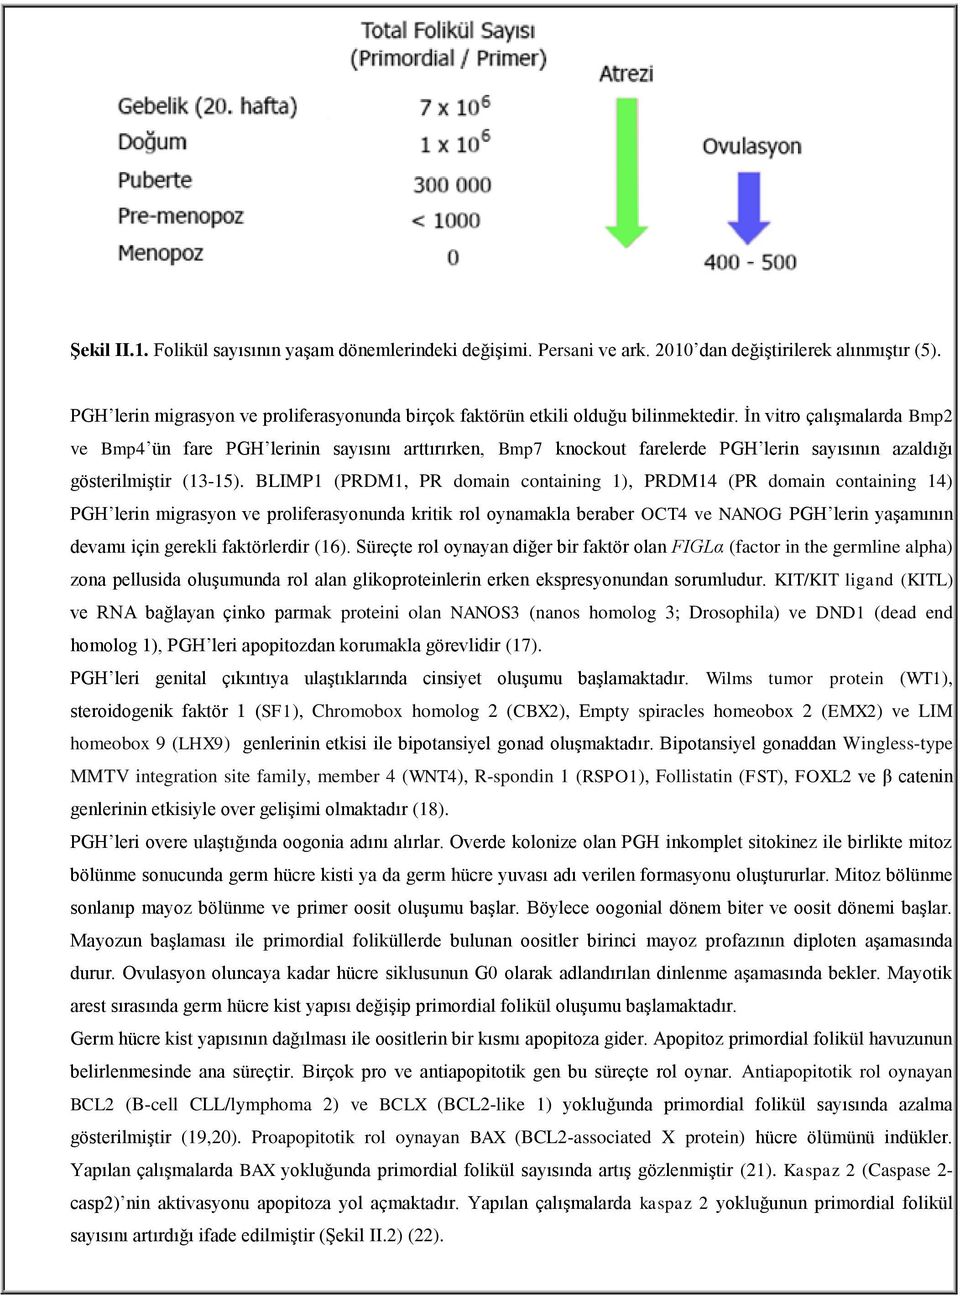 İn vitro çalışmalarda Bmp2 ve Bmp4 ün fare PGH lerinin sayısını arttırırken, Bmp7 knockout farelerde PGH lerin sayısının azaldığı gösterilmiştir (13-15).